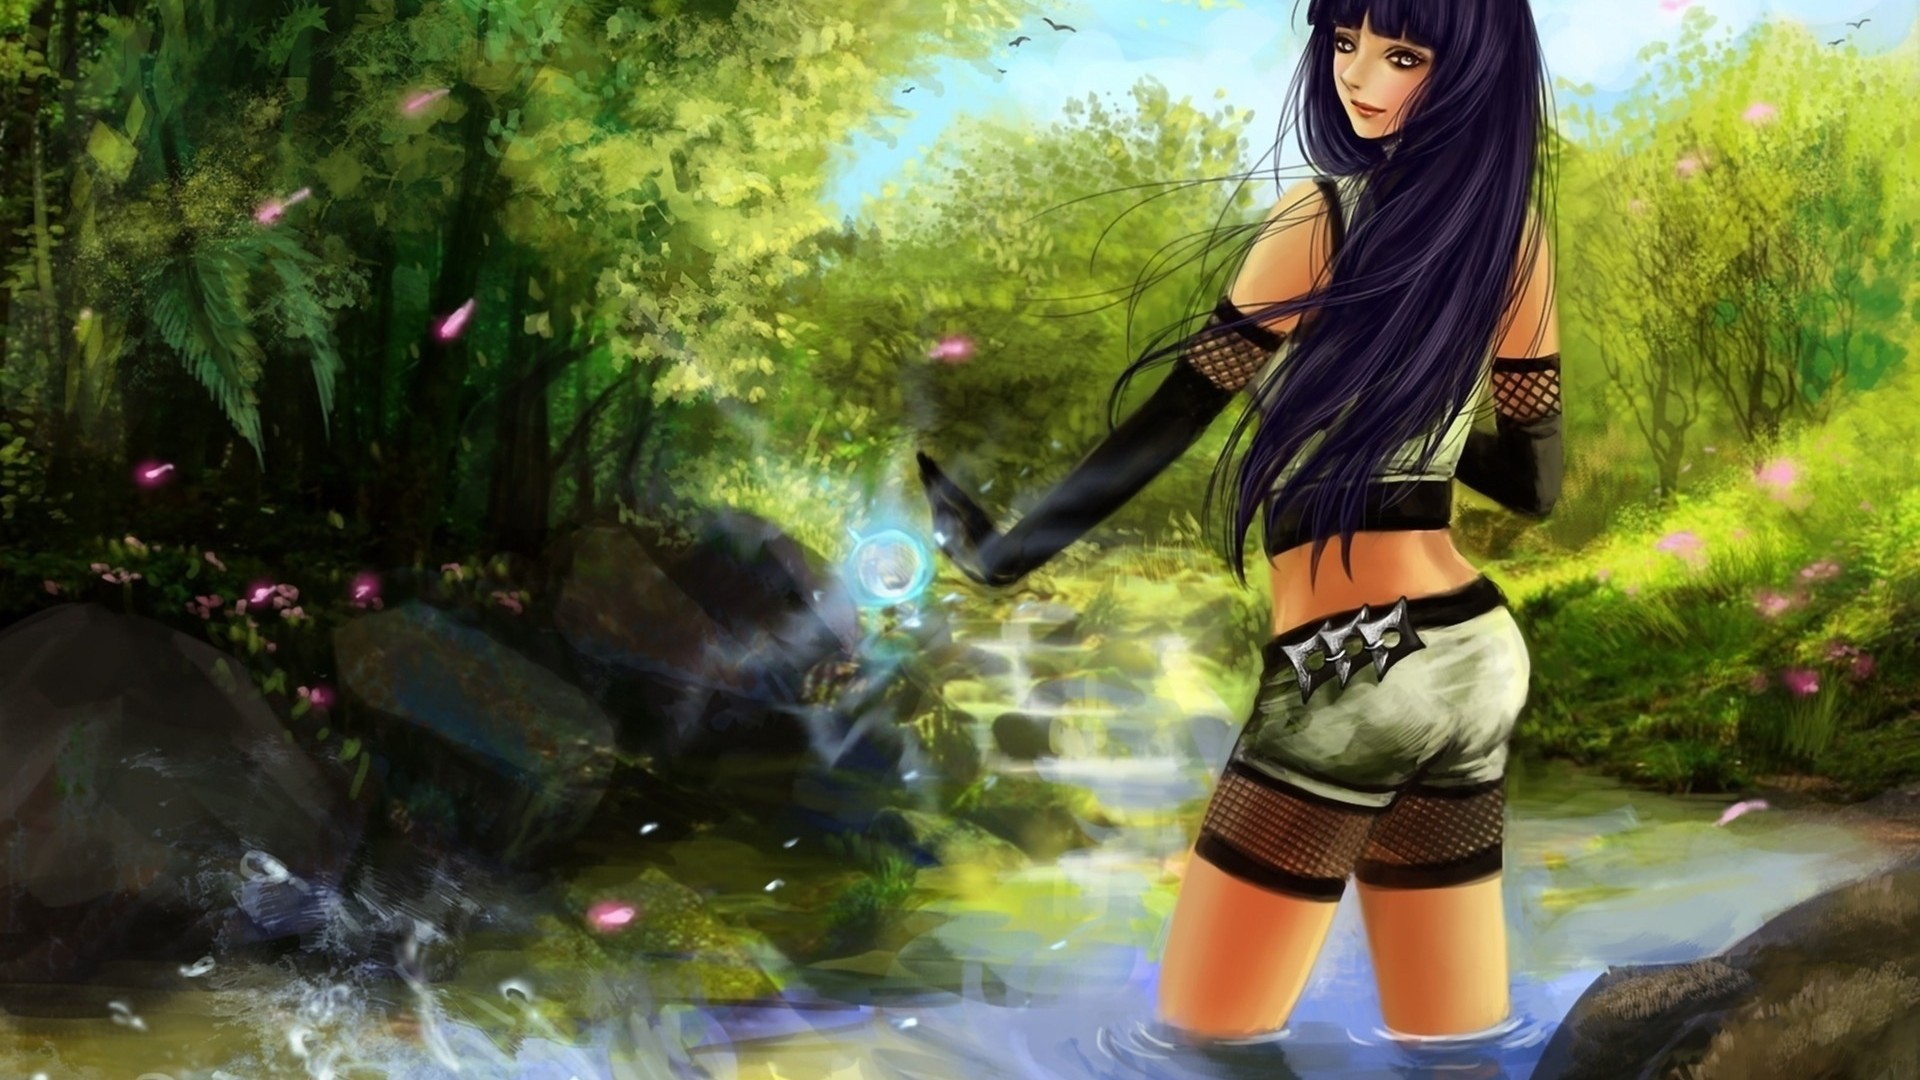 Anime, Hinata And Naruto, anime girl, nature Image Wallpaper